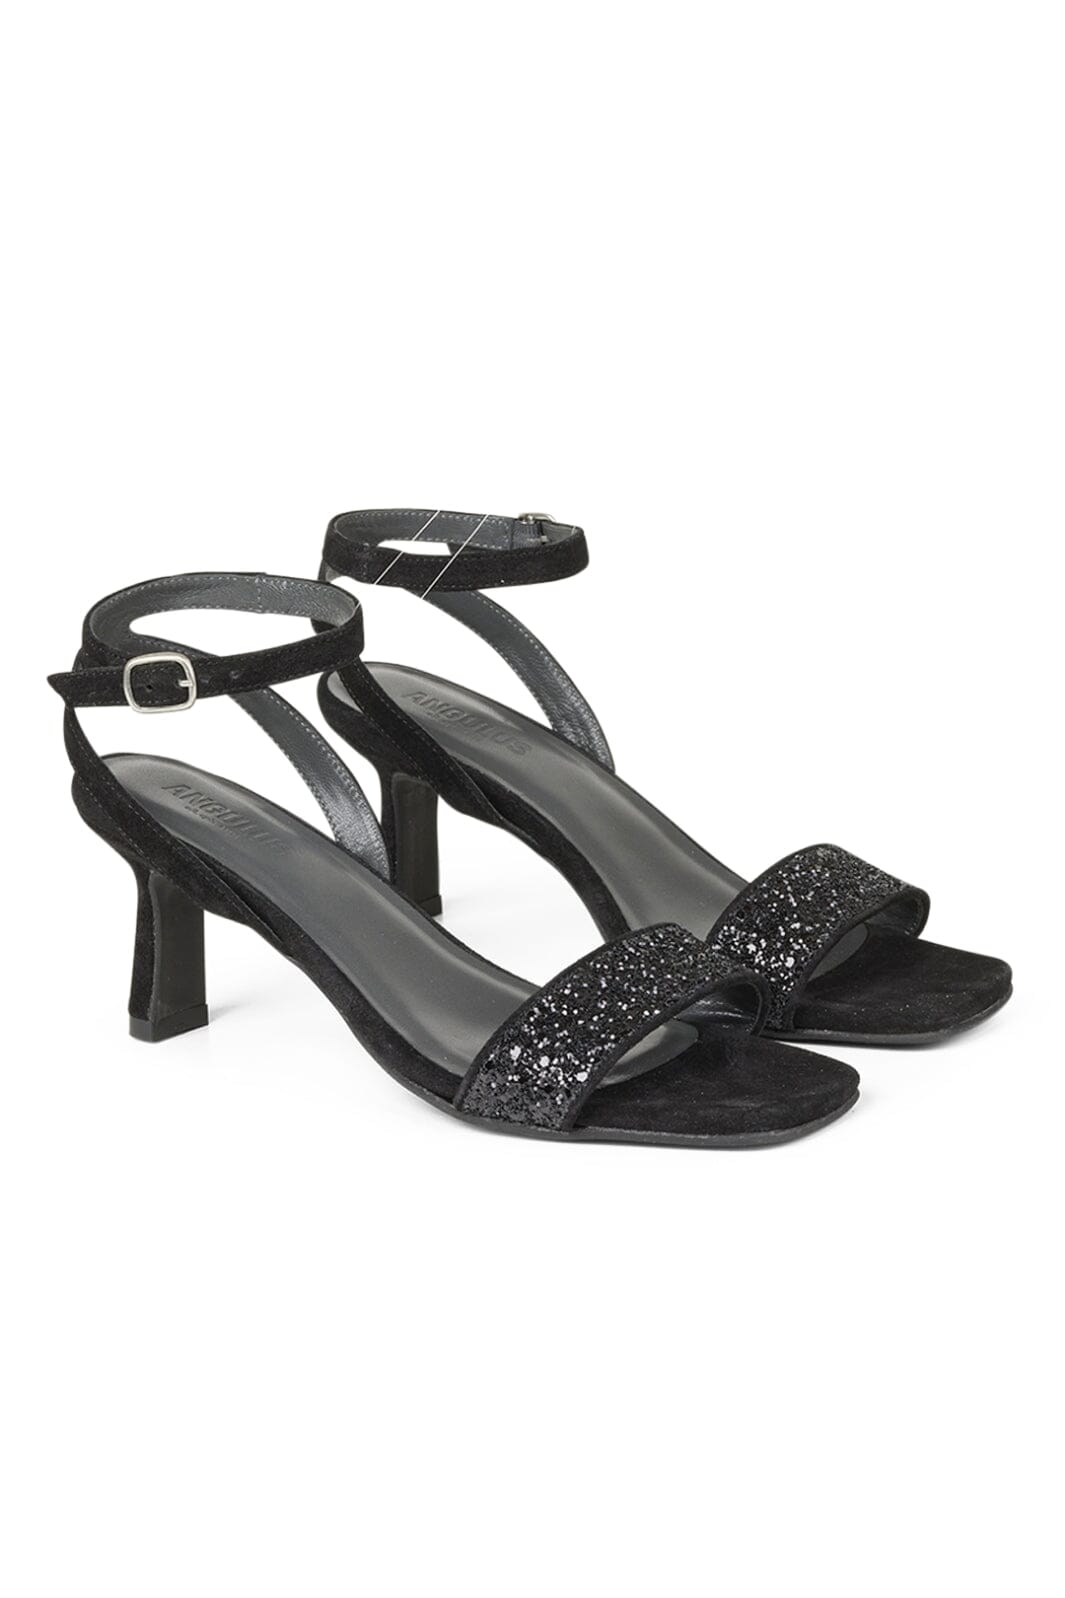 Angulus - Sandal with heel - 2486/1163 Black Glitter/Black Stiletter 